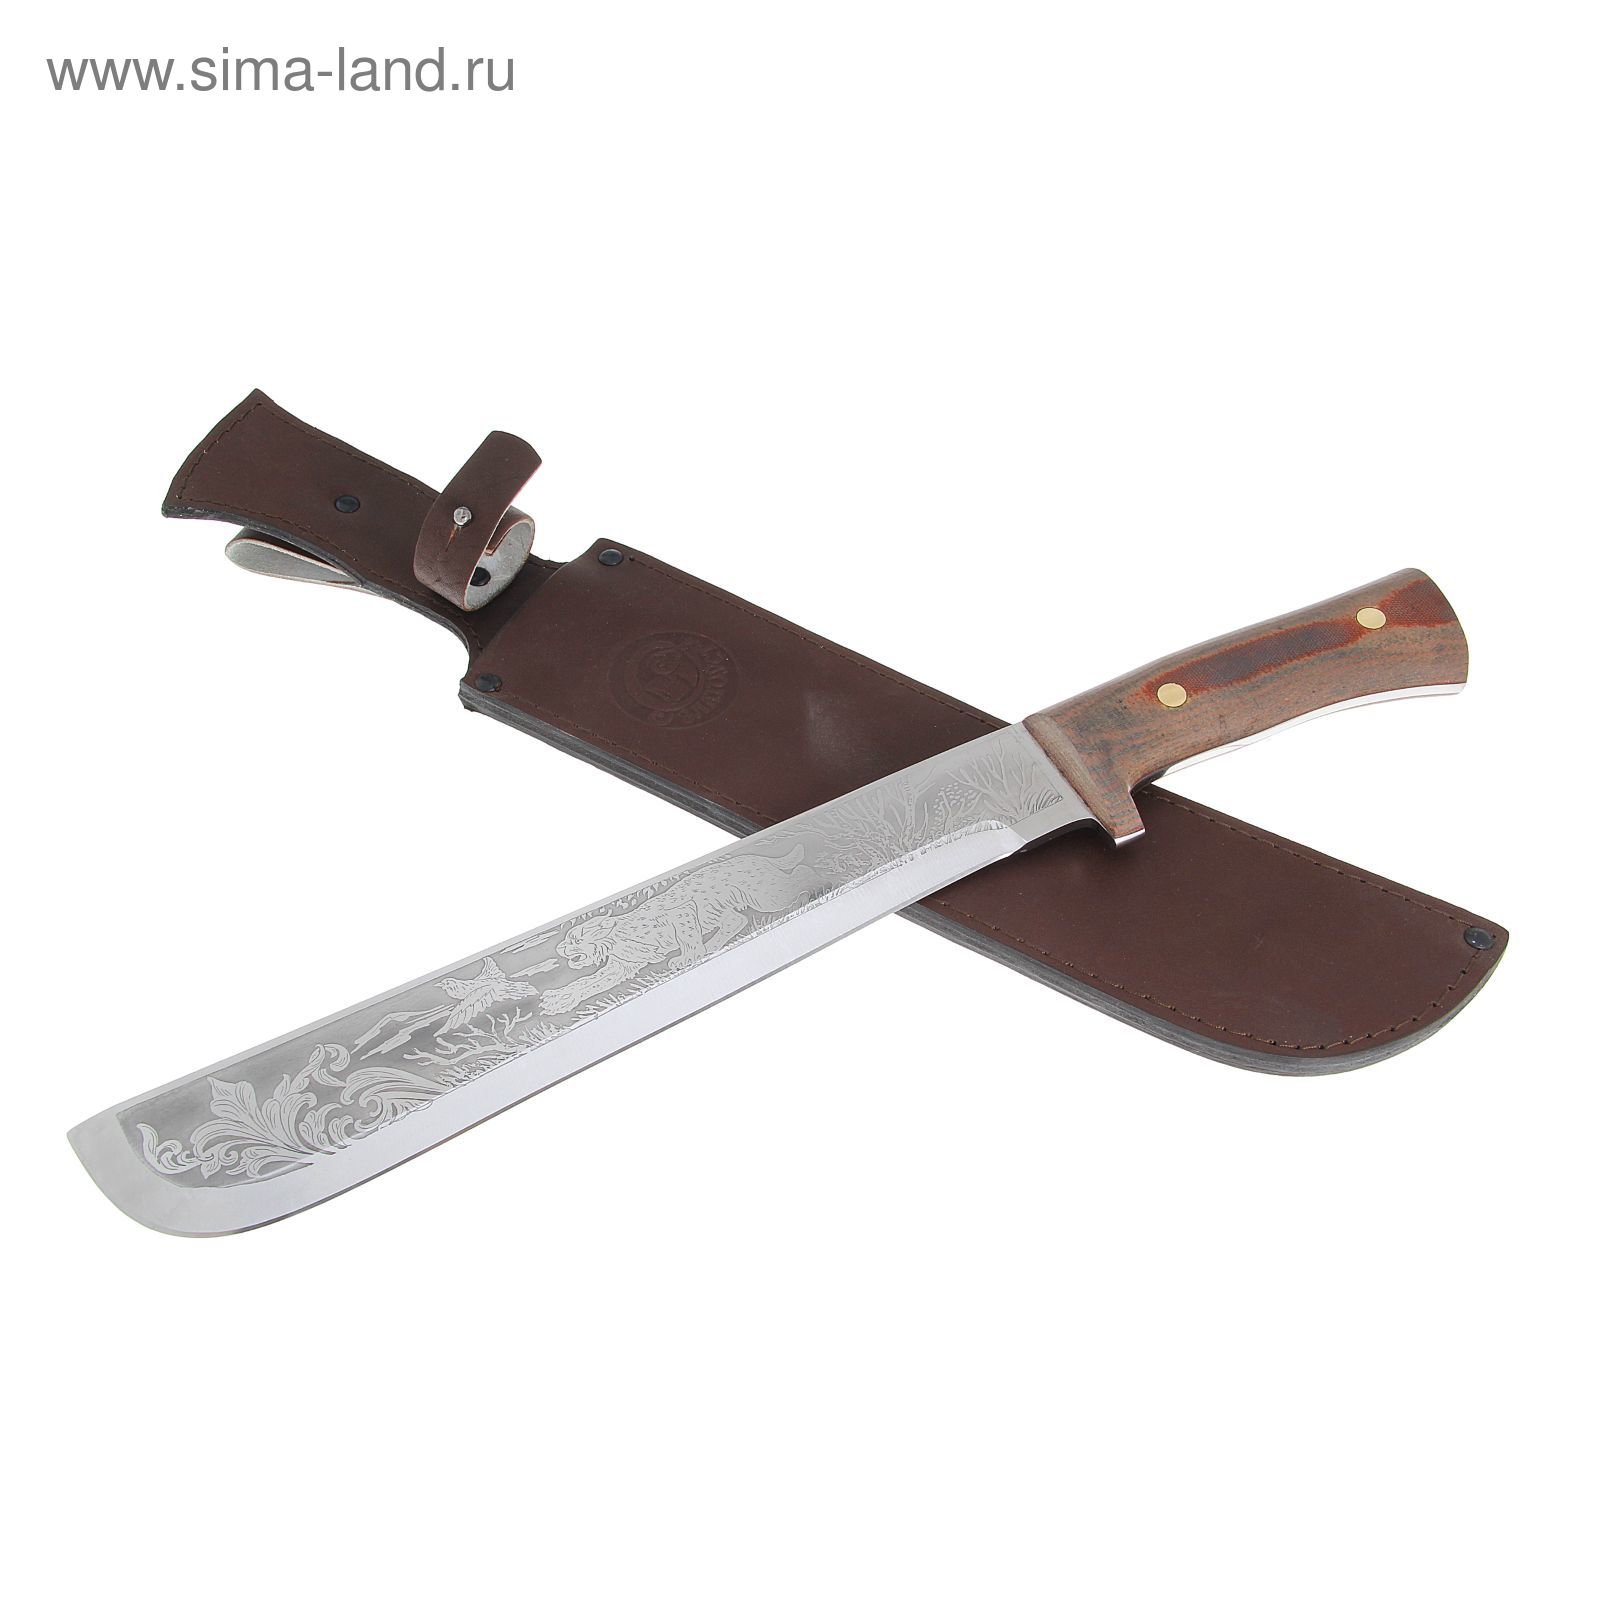 Нож НС-76 г.Златоуст, рукоять-текстолит, сталь 40Х10С2М